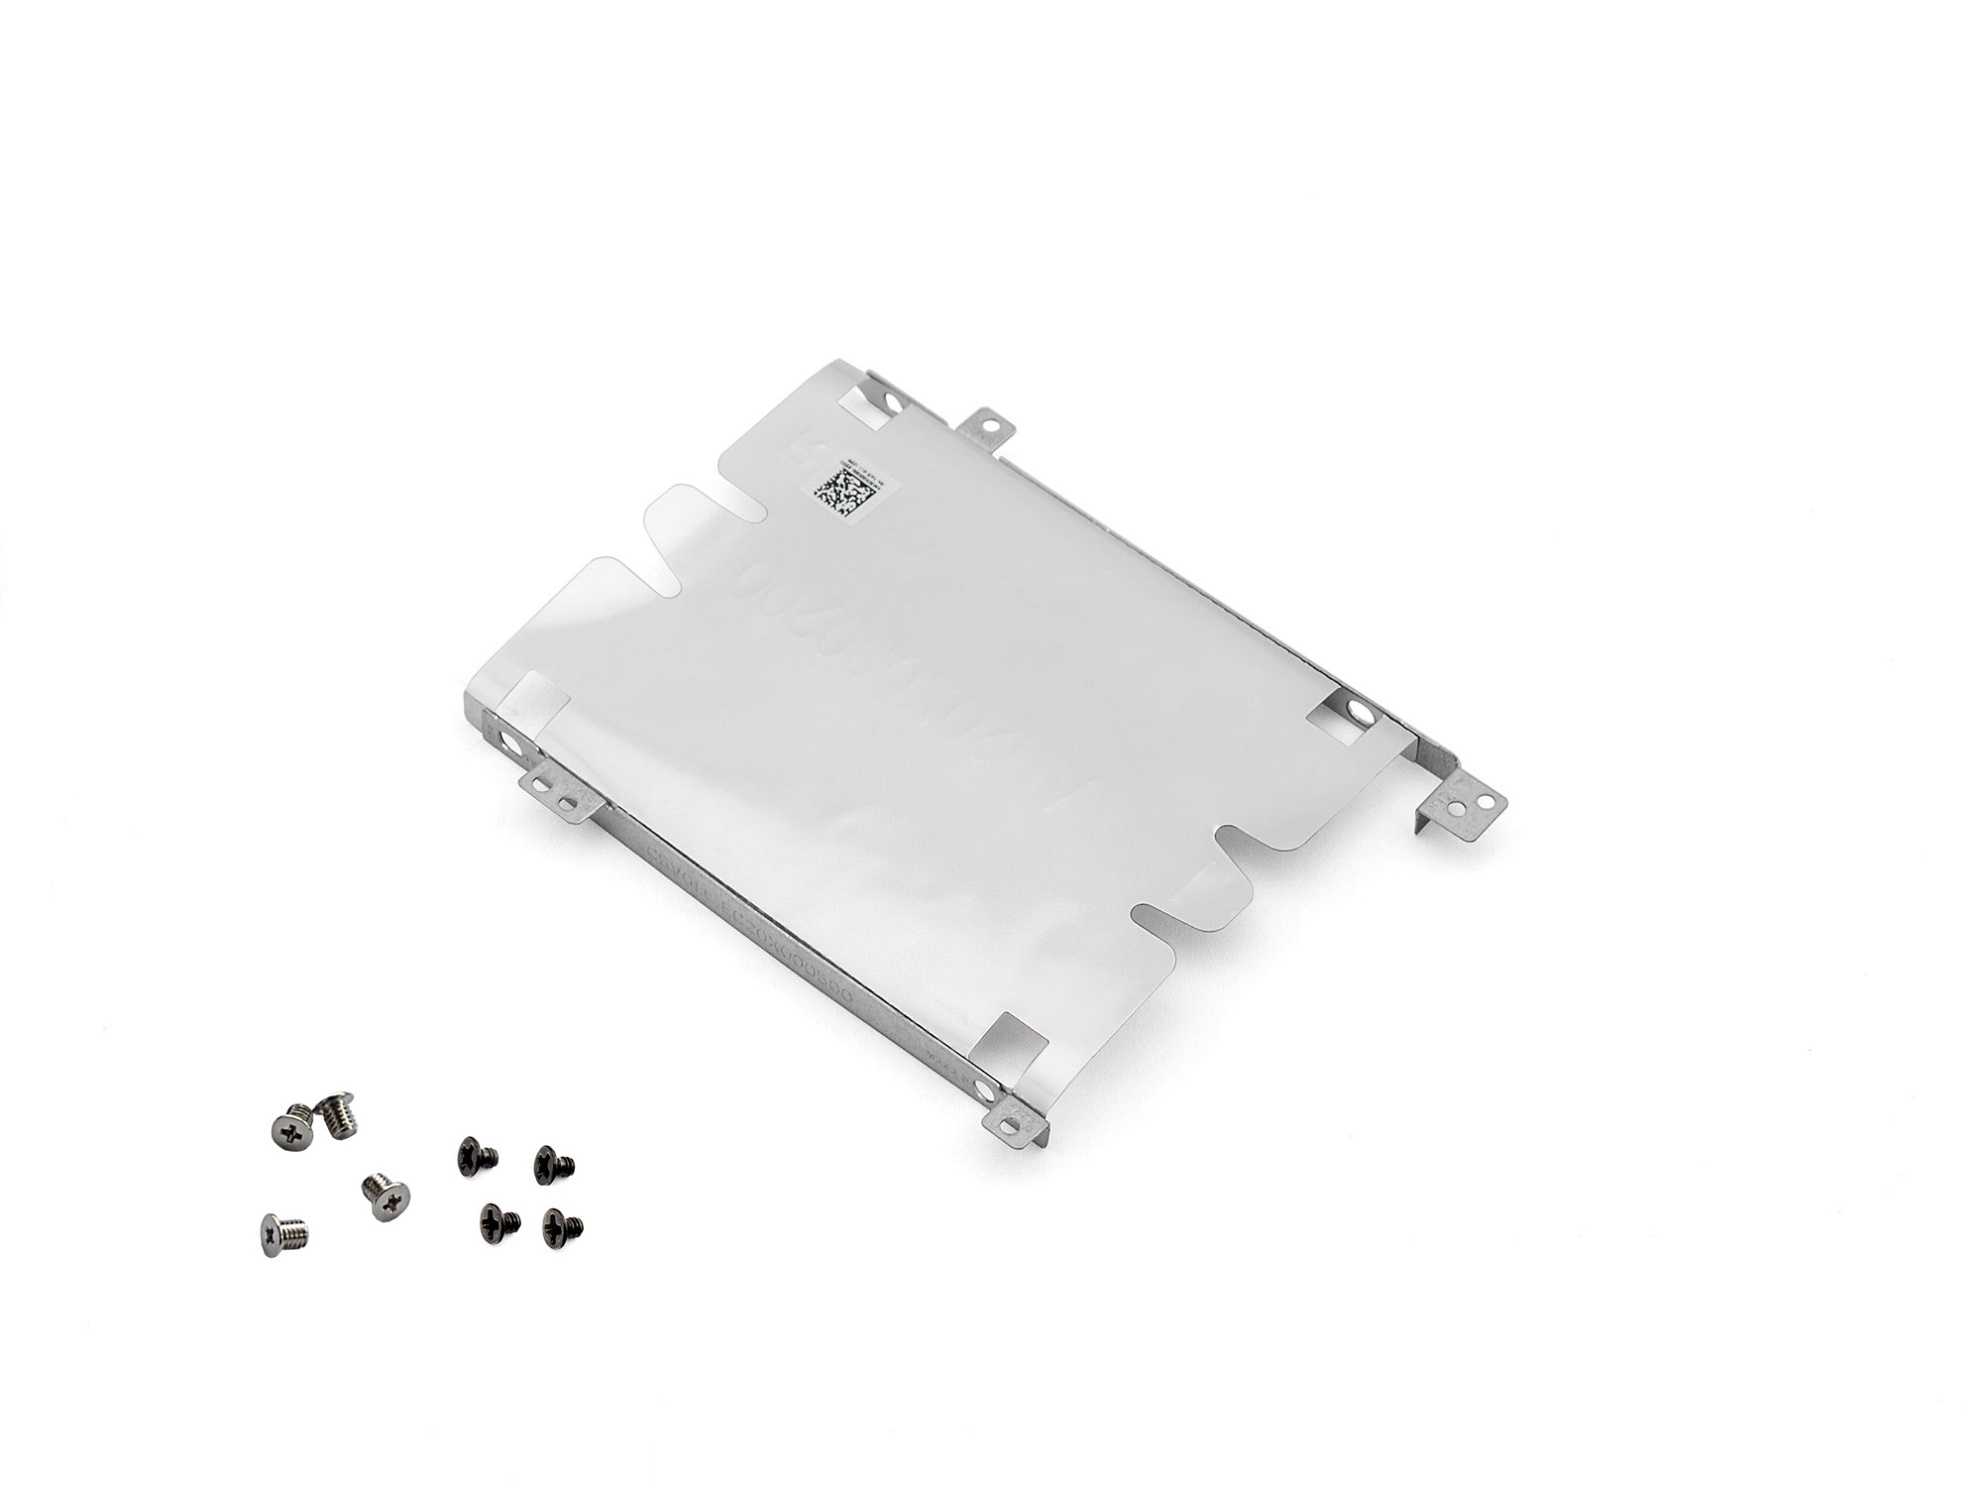 Festplatten-Einbaurahmen für den 2. Festplatten Schacht inkl. Schrauben Original für Acer Nitro 5 (AN515-31)